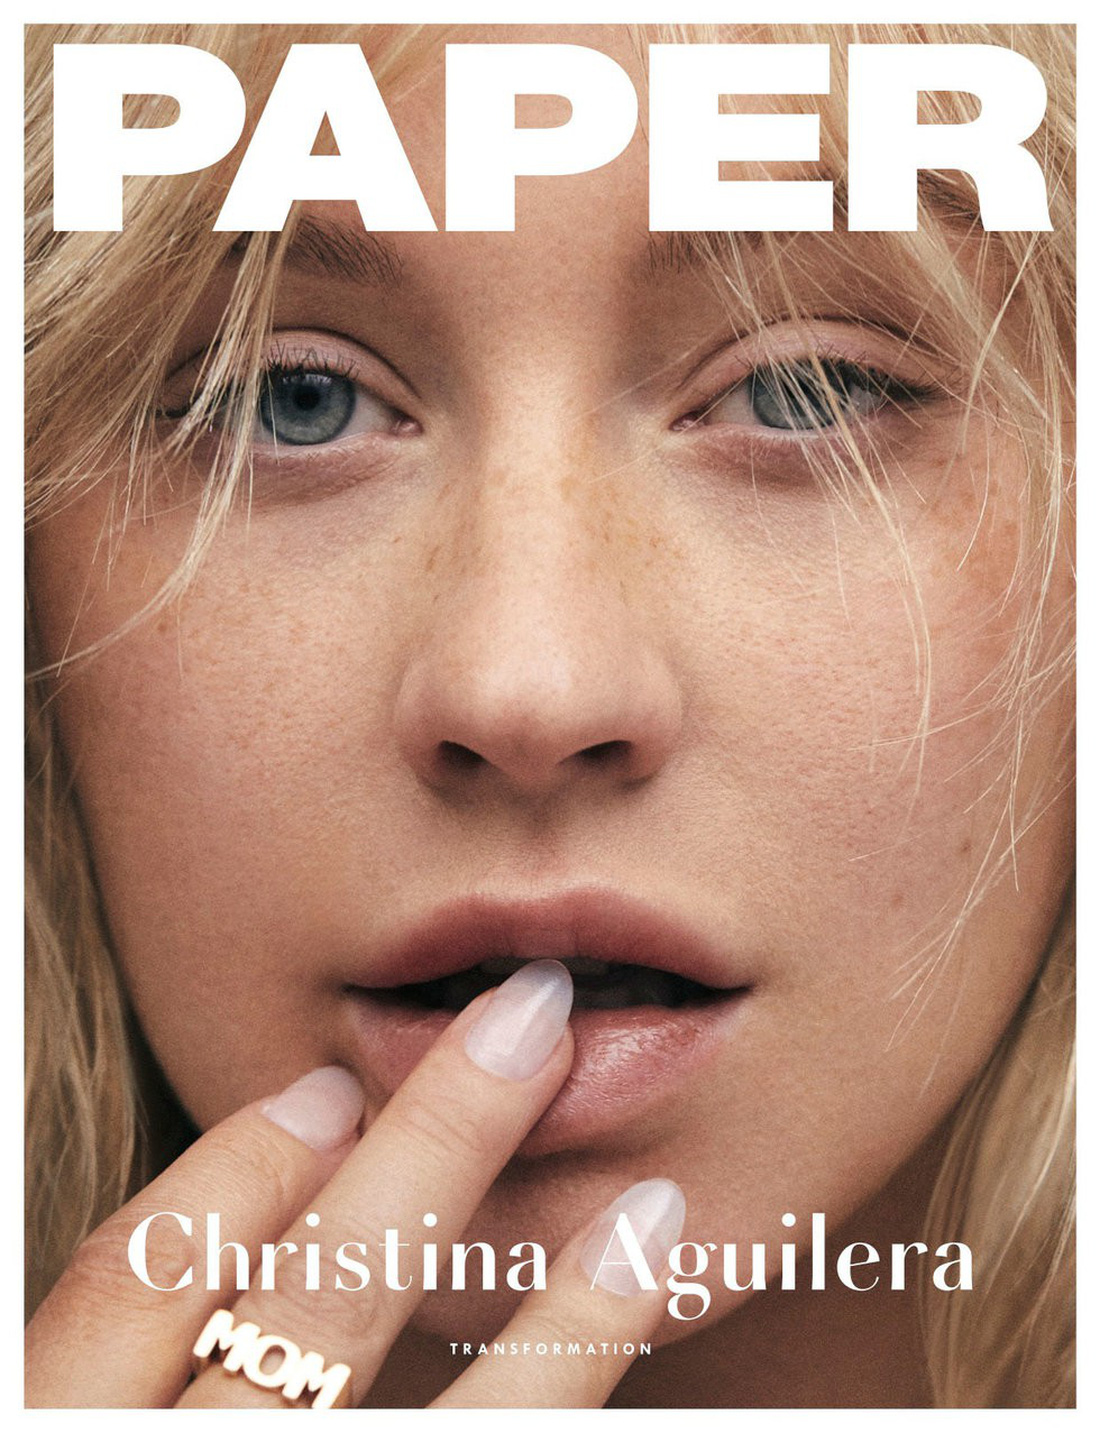 Christina Aguilera: đang ở thời điểm muốn trút bỏ tất cả - Ảnh 7.